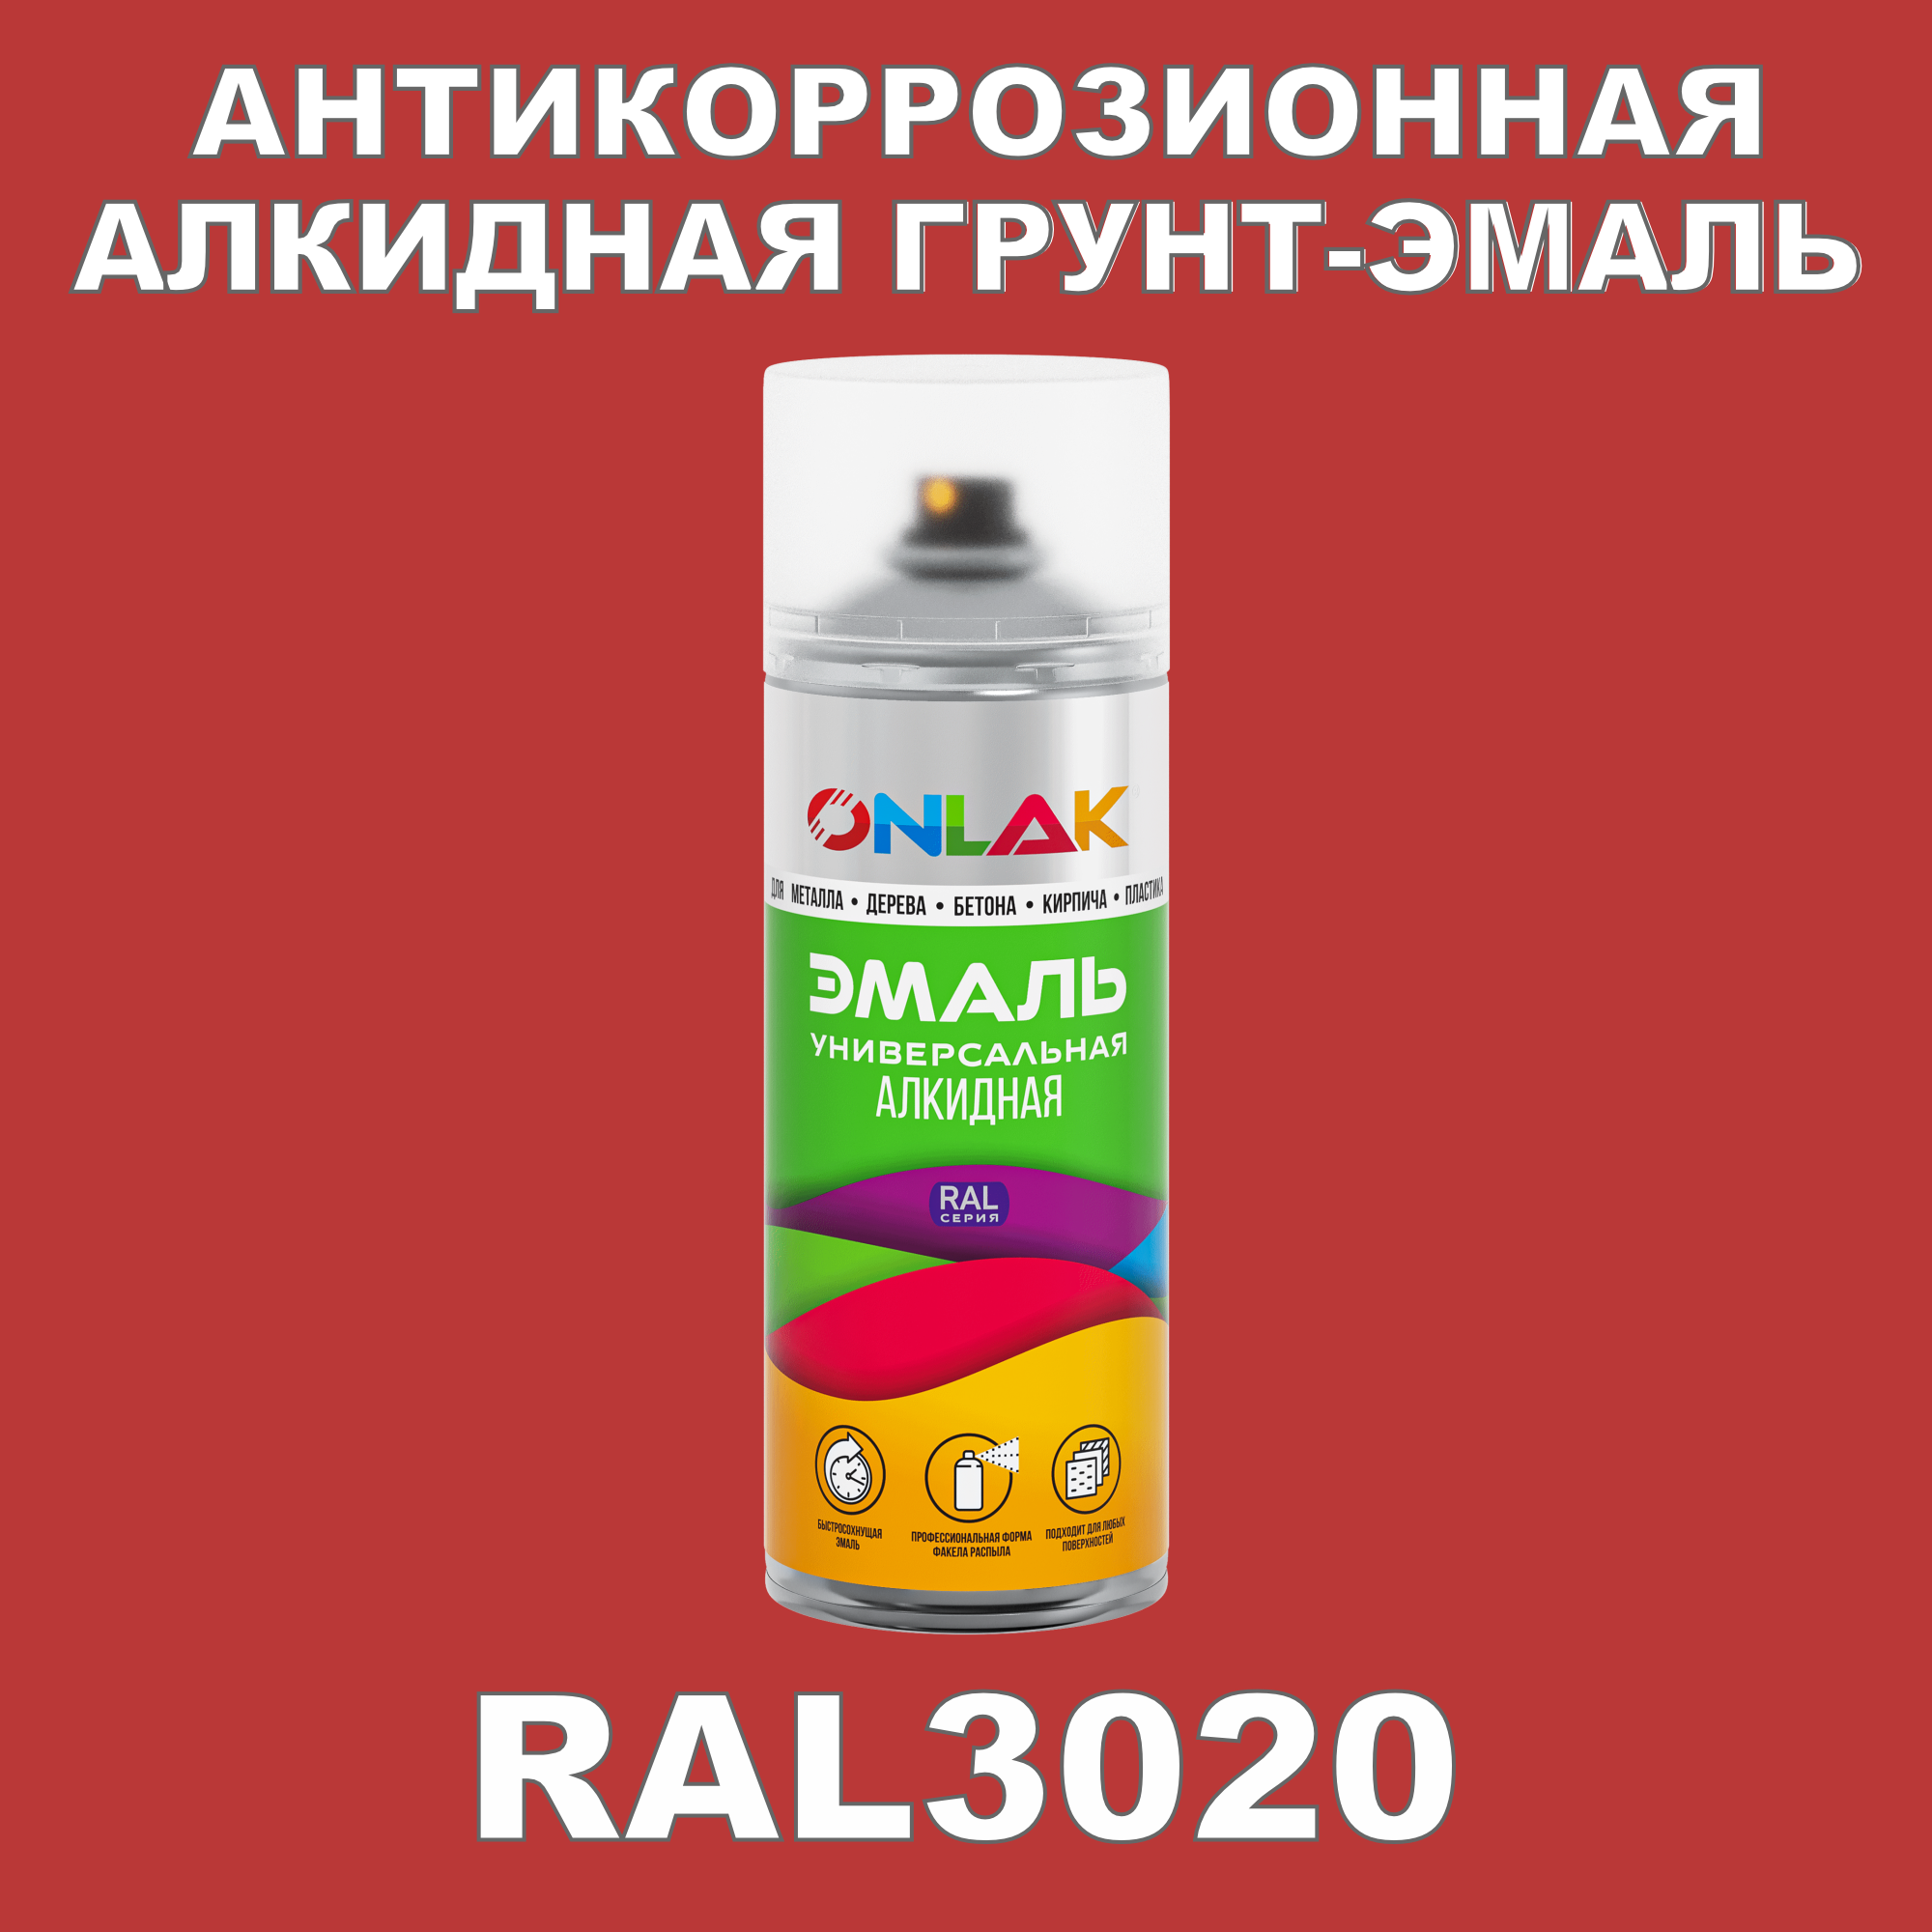 Антикоррозионная грунт-эмаль ONLAK RAL3020 полуматовая для металла и защиты от ржавчины